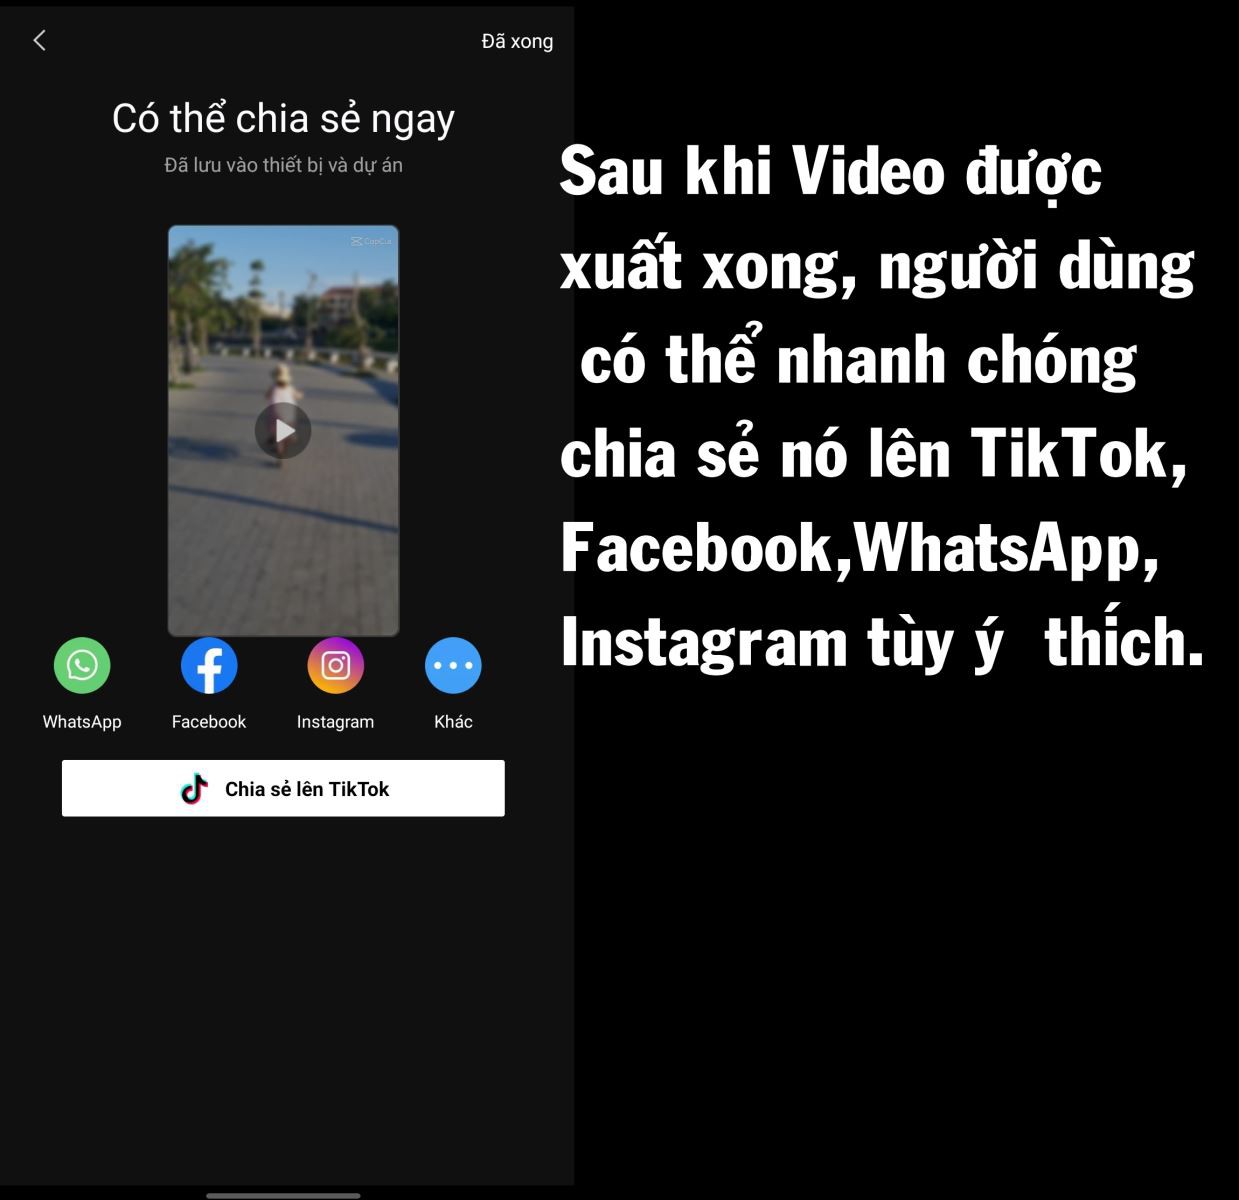 Chia sẻ đoạn video lên TikTok, Facebook,... tùy ý thích của bạn.